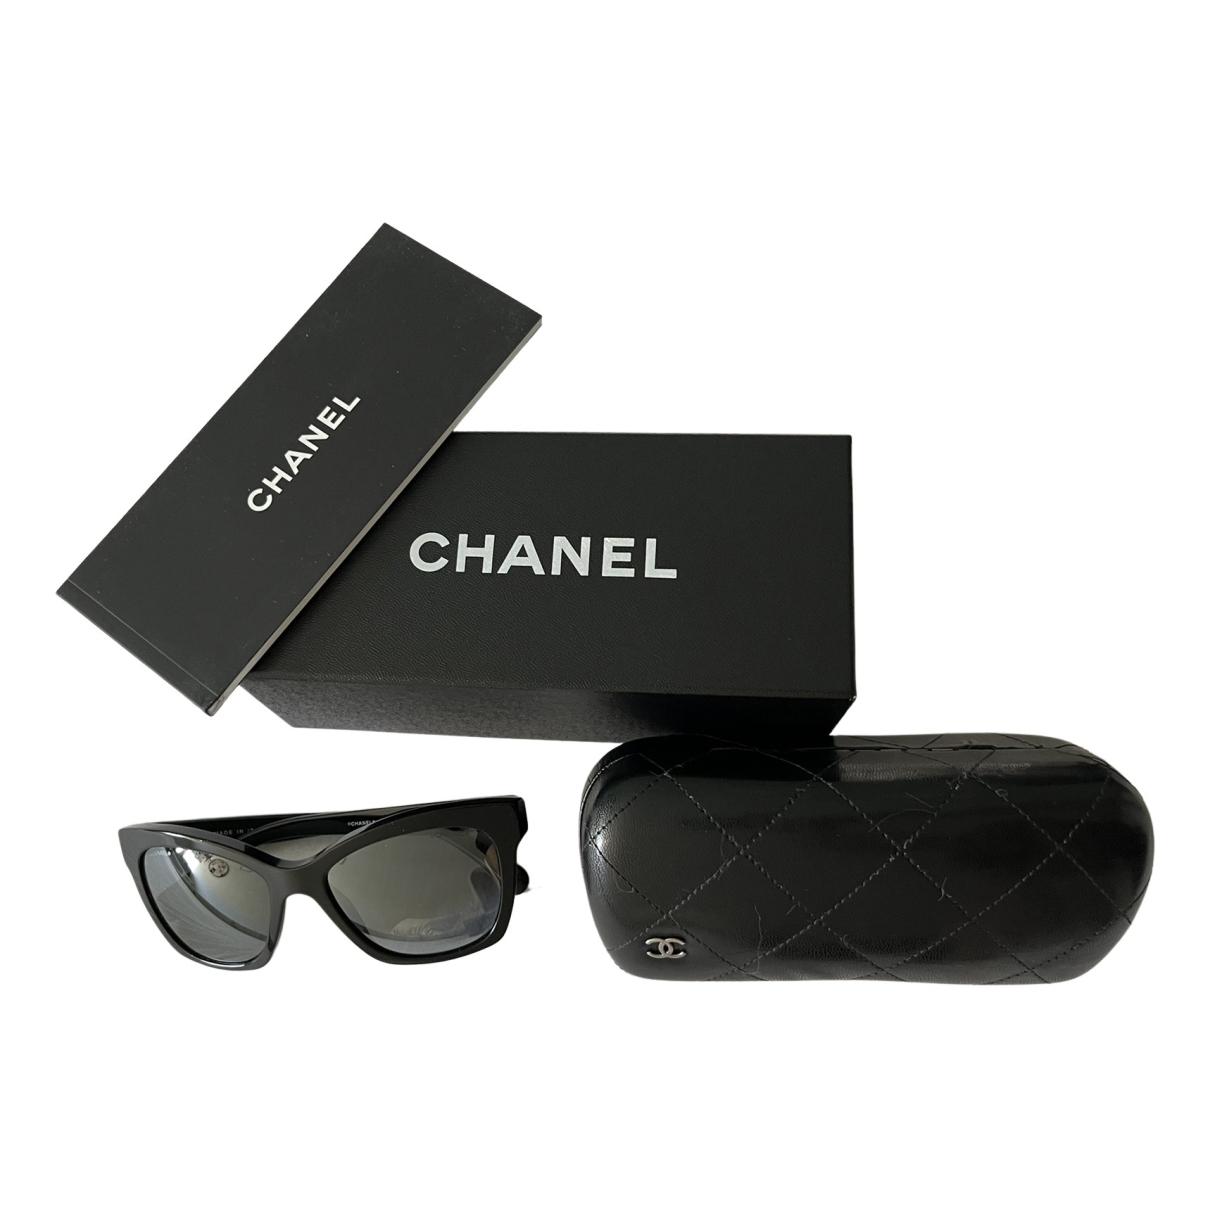 Sunglasses Chanel Black in Plastic - 15316503